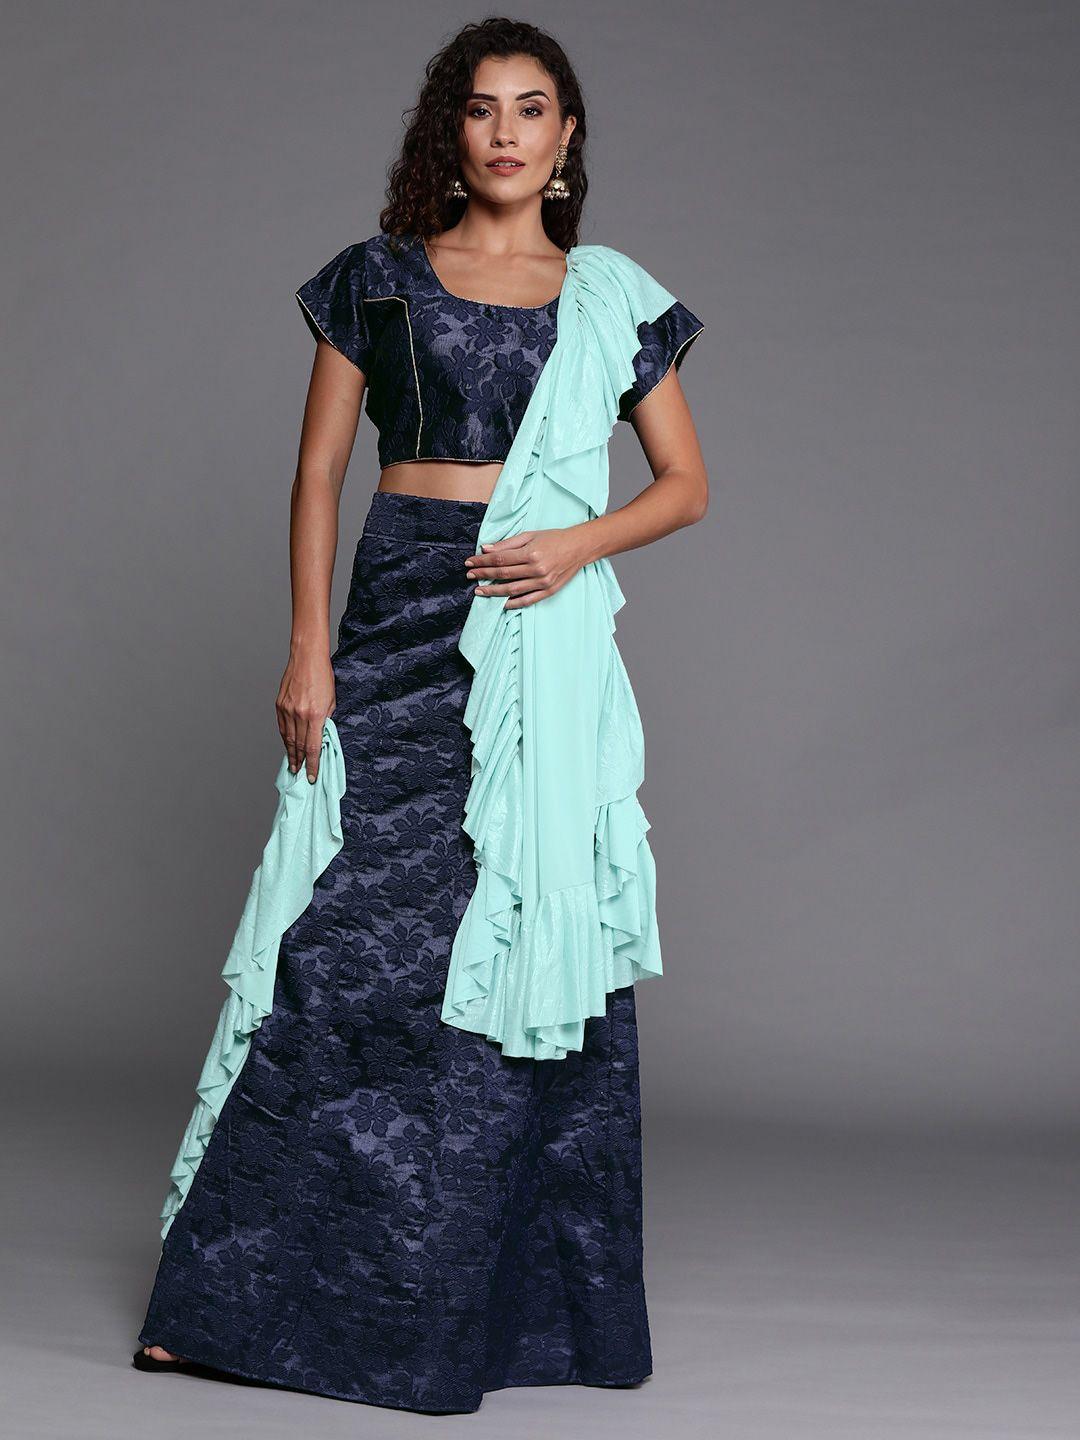 ishin navy blue & turquoise semi-stitched lehenga & unstitched blouse with dupatta